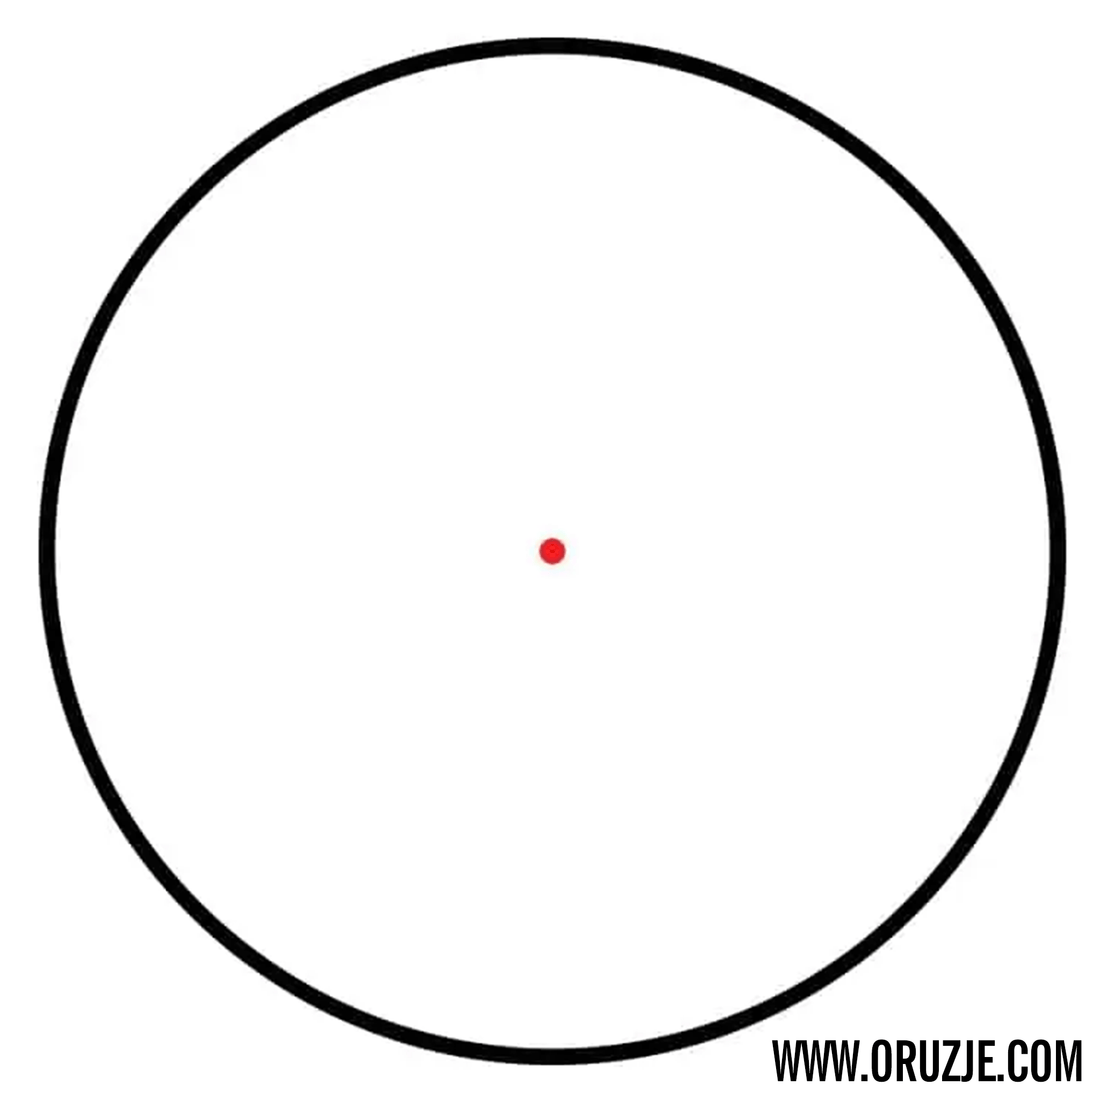 Hawke Reflex Sight Red Dot (5 MOA) "Auto Brightness"